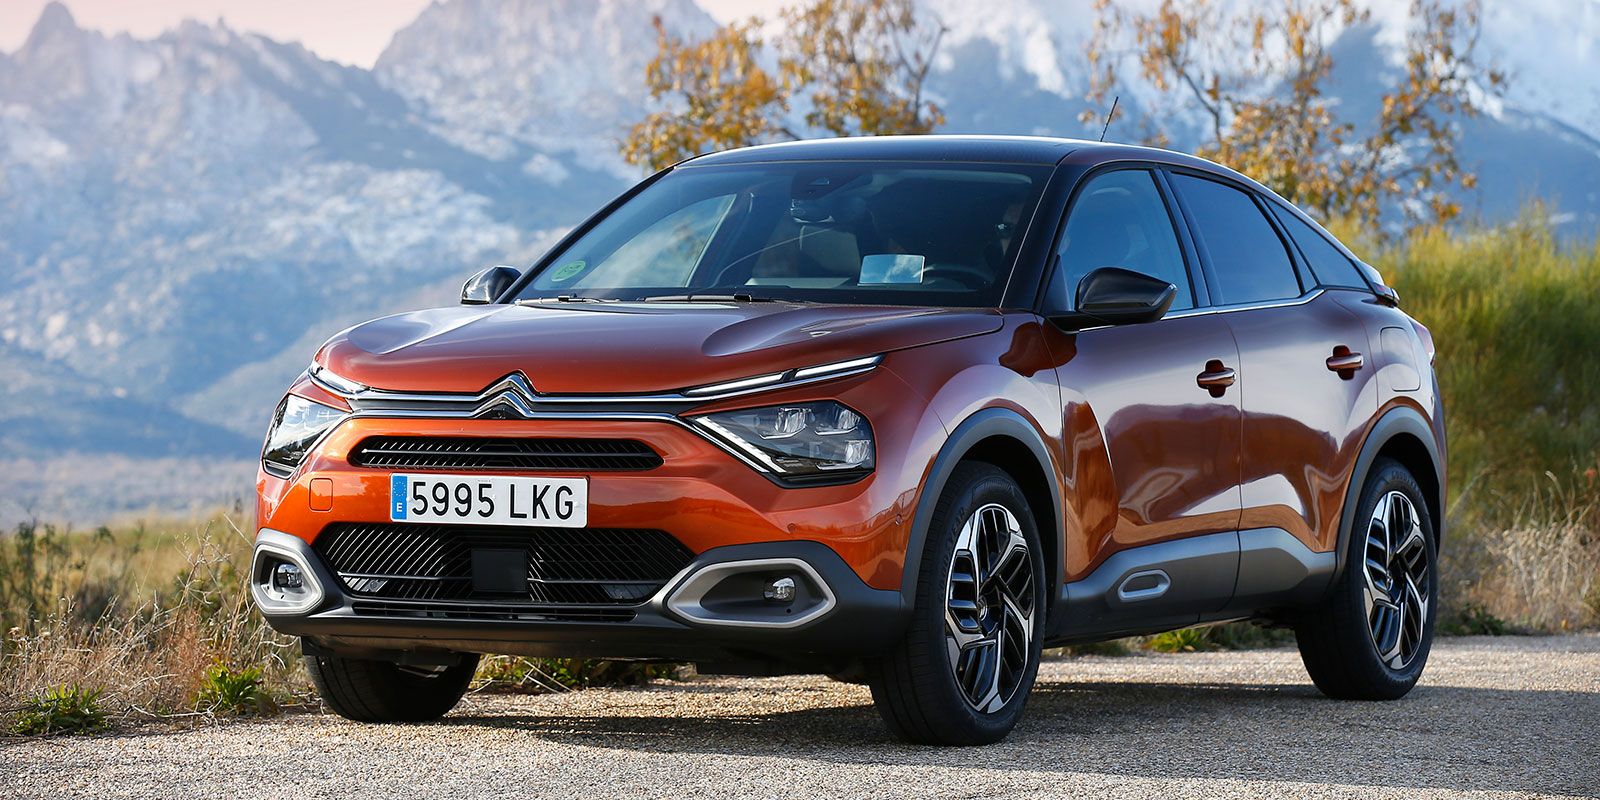 Citroën: El nuevo Citroën C4 ya se puede pedir desde 20.800 euros